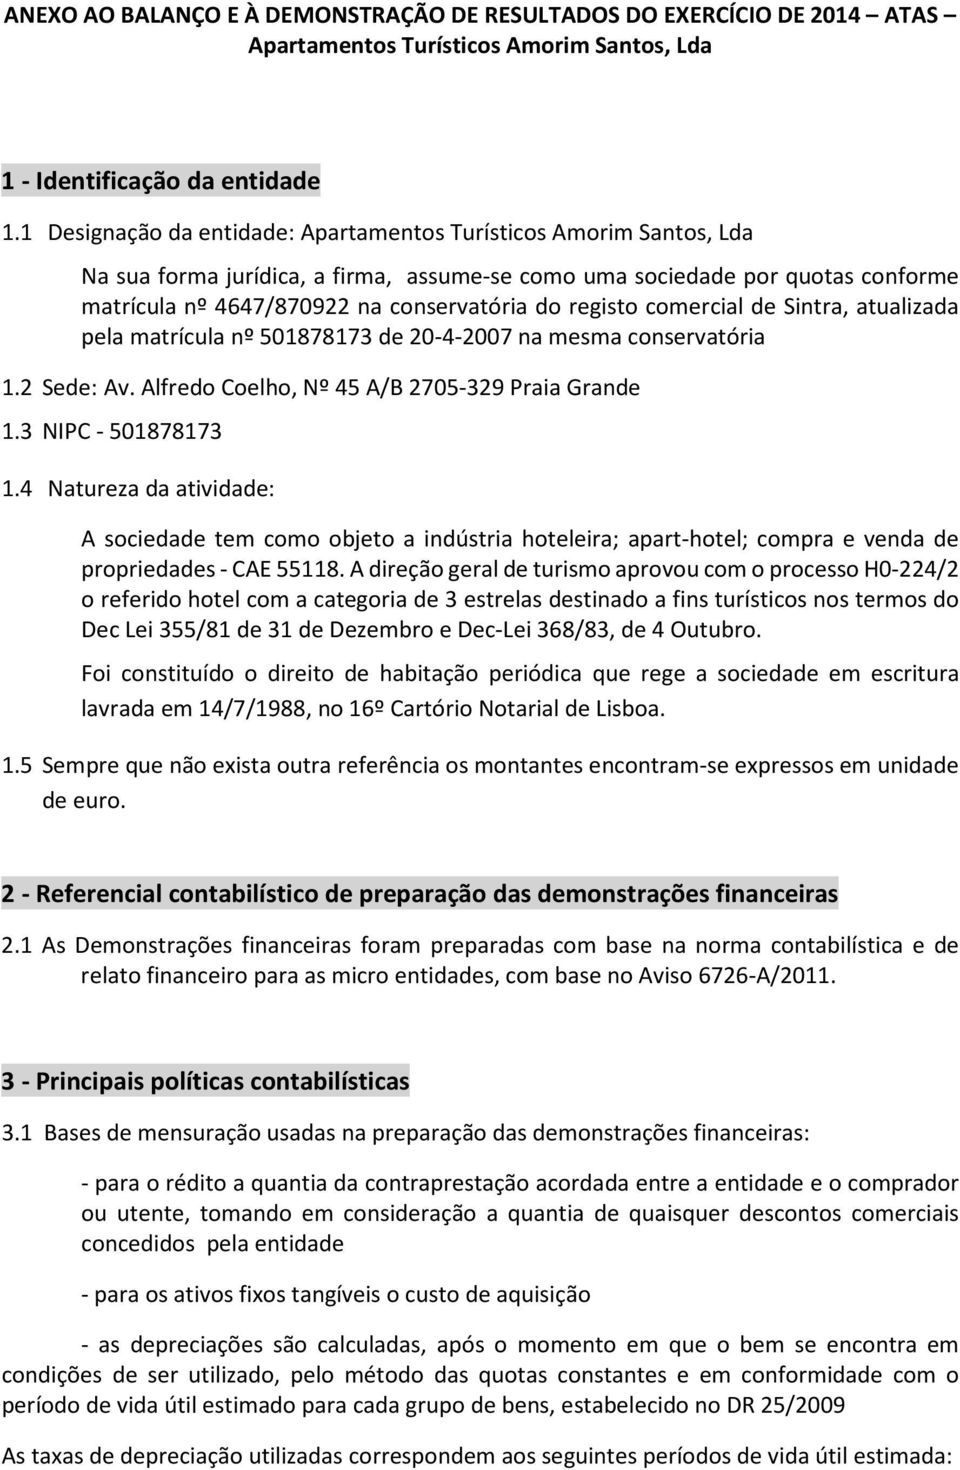 registo comercial de Sintra, atualizada pela matrícula nº 501878173 de 20-4-2007 na mesma conservatória 1.2 Sede: Av. Alfredo Coelho, Nº 45 A/B 2705-329 Praia Grande 1.3 NIPC - 501878173 1.